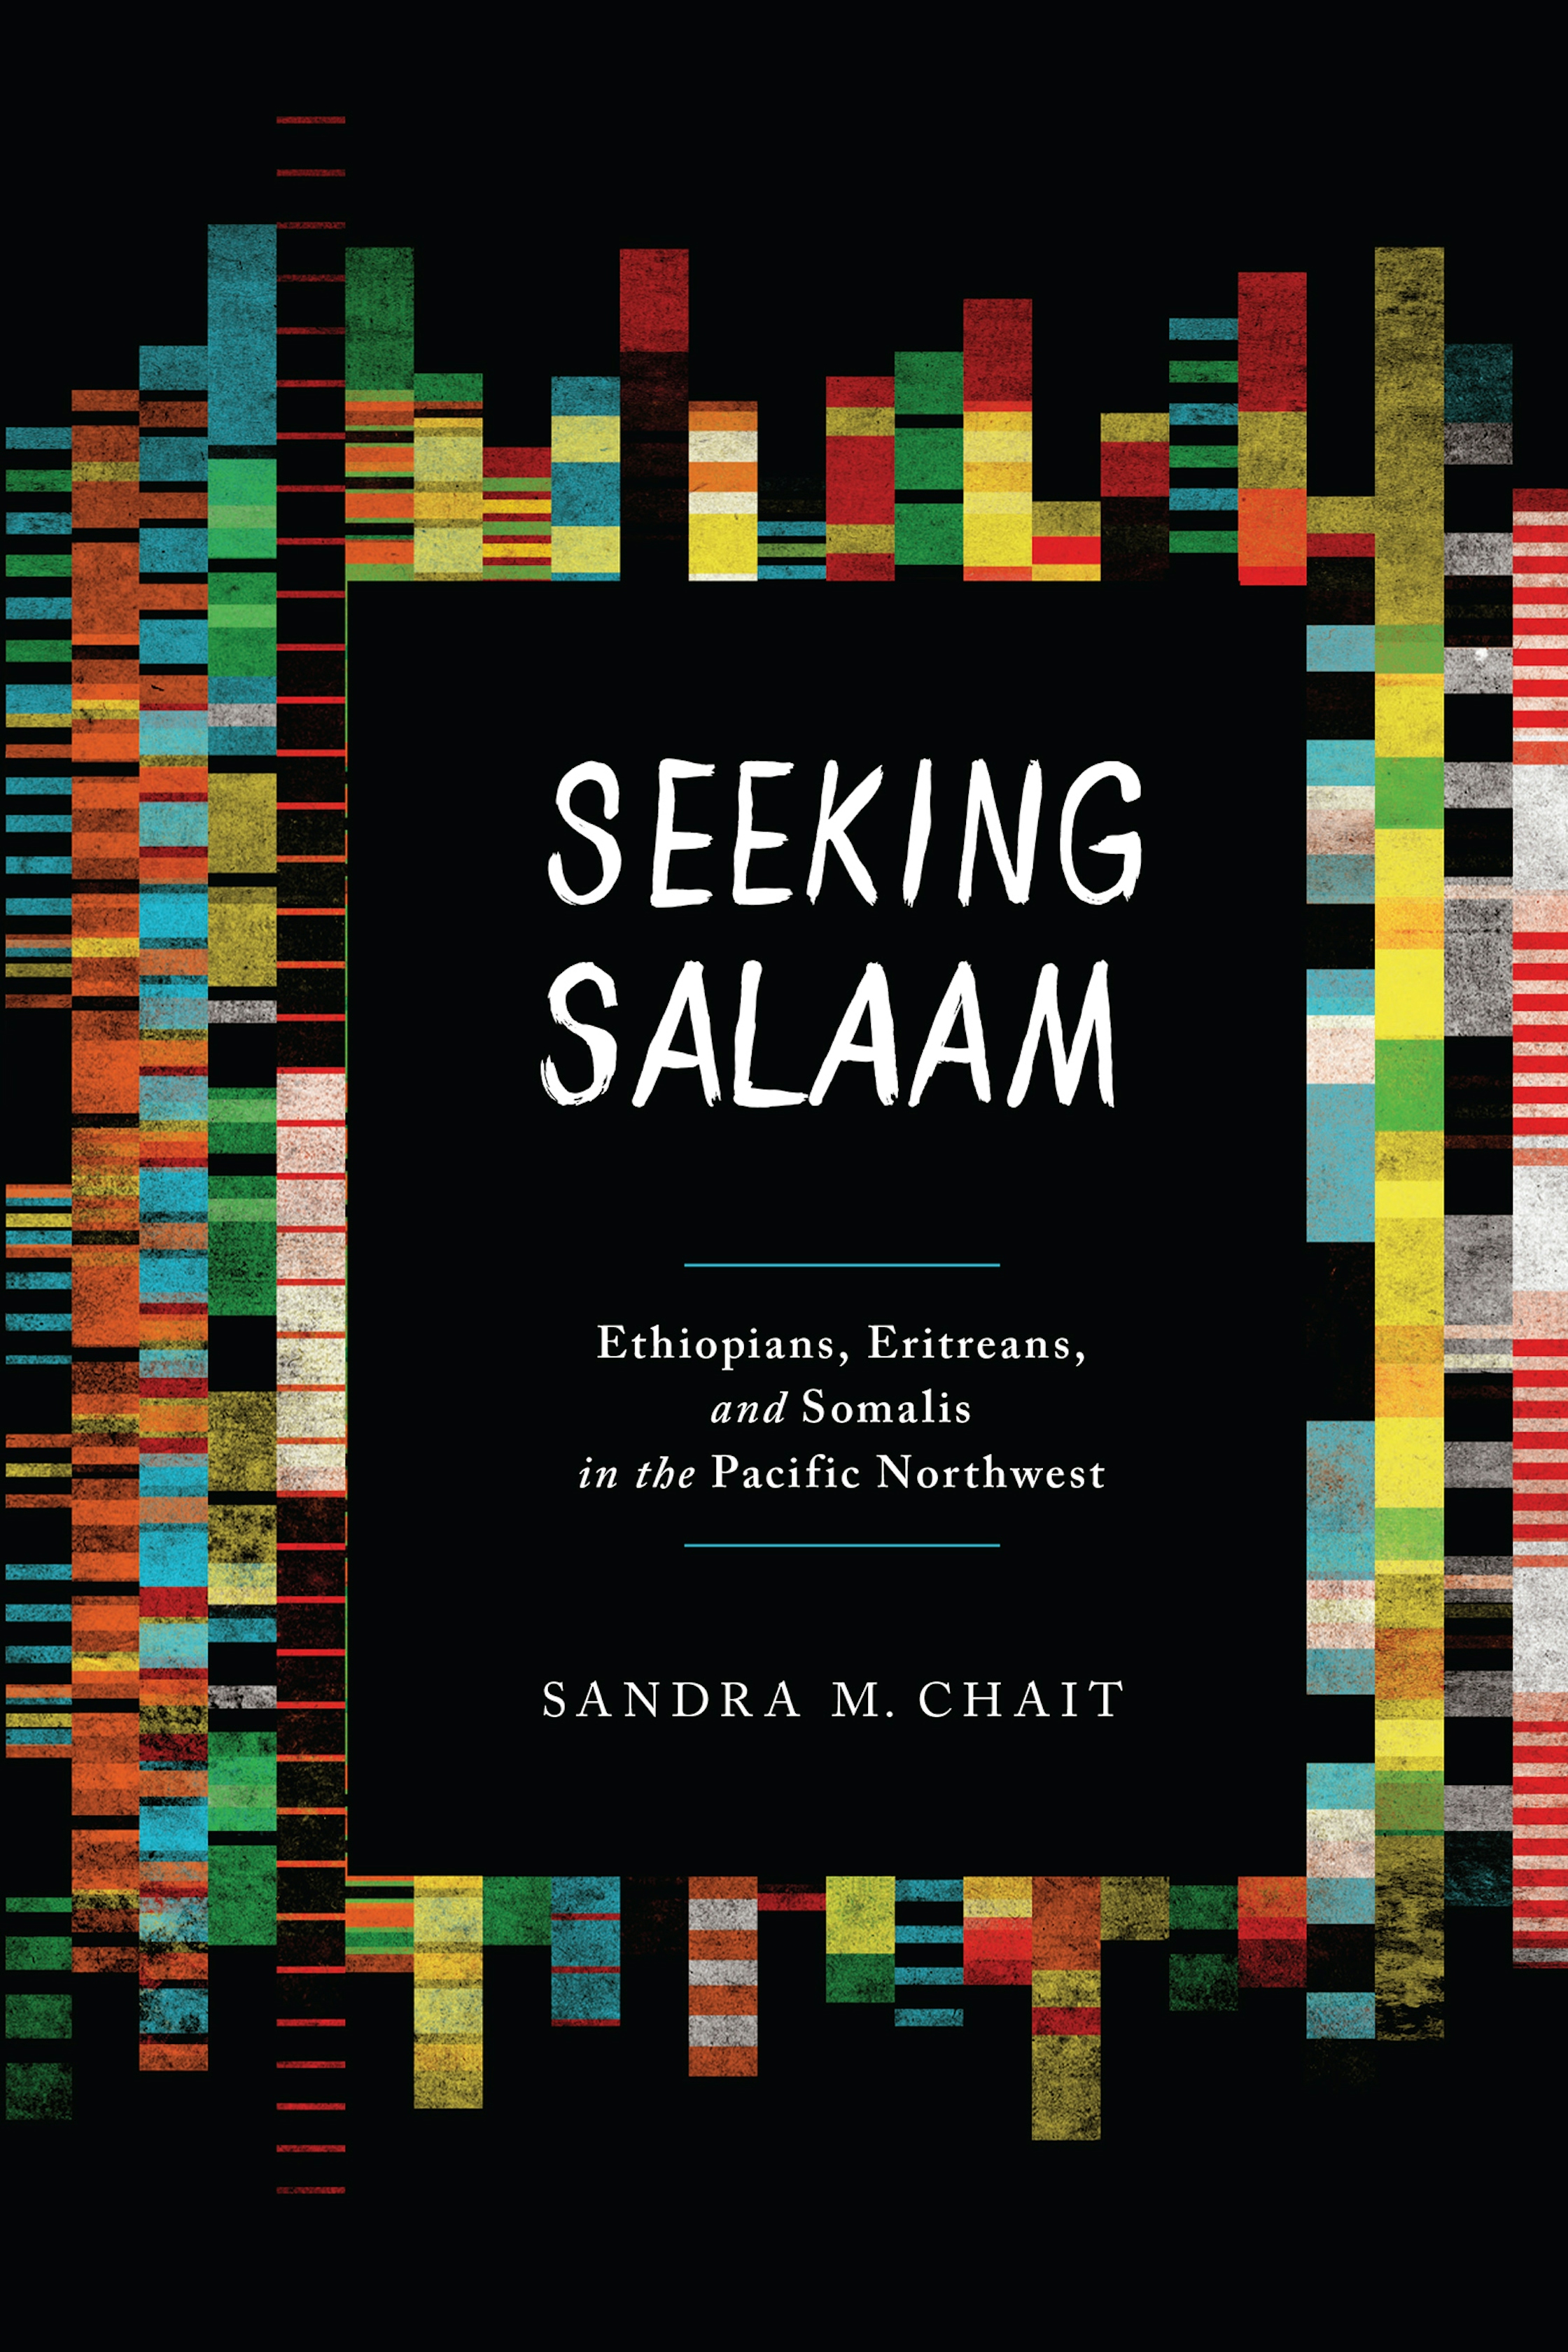 Seeking Salaam